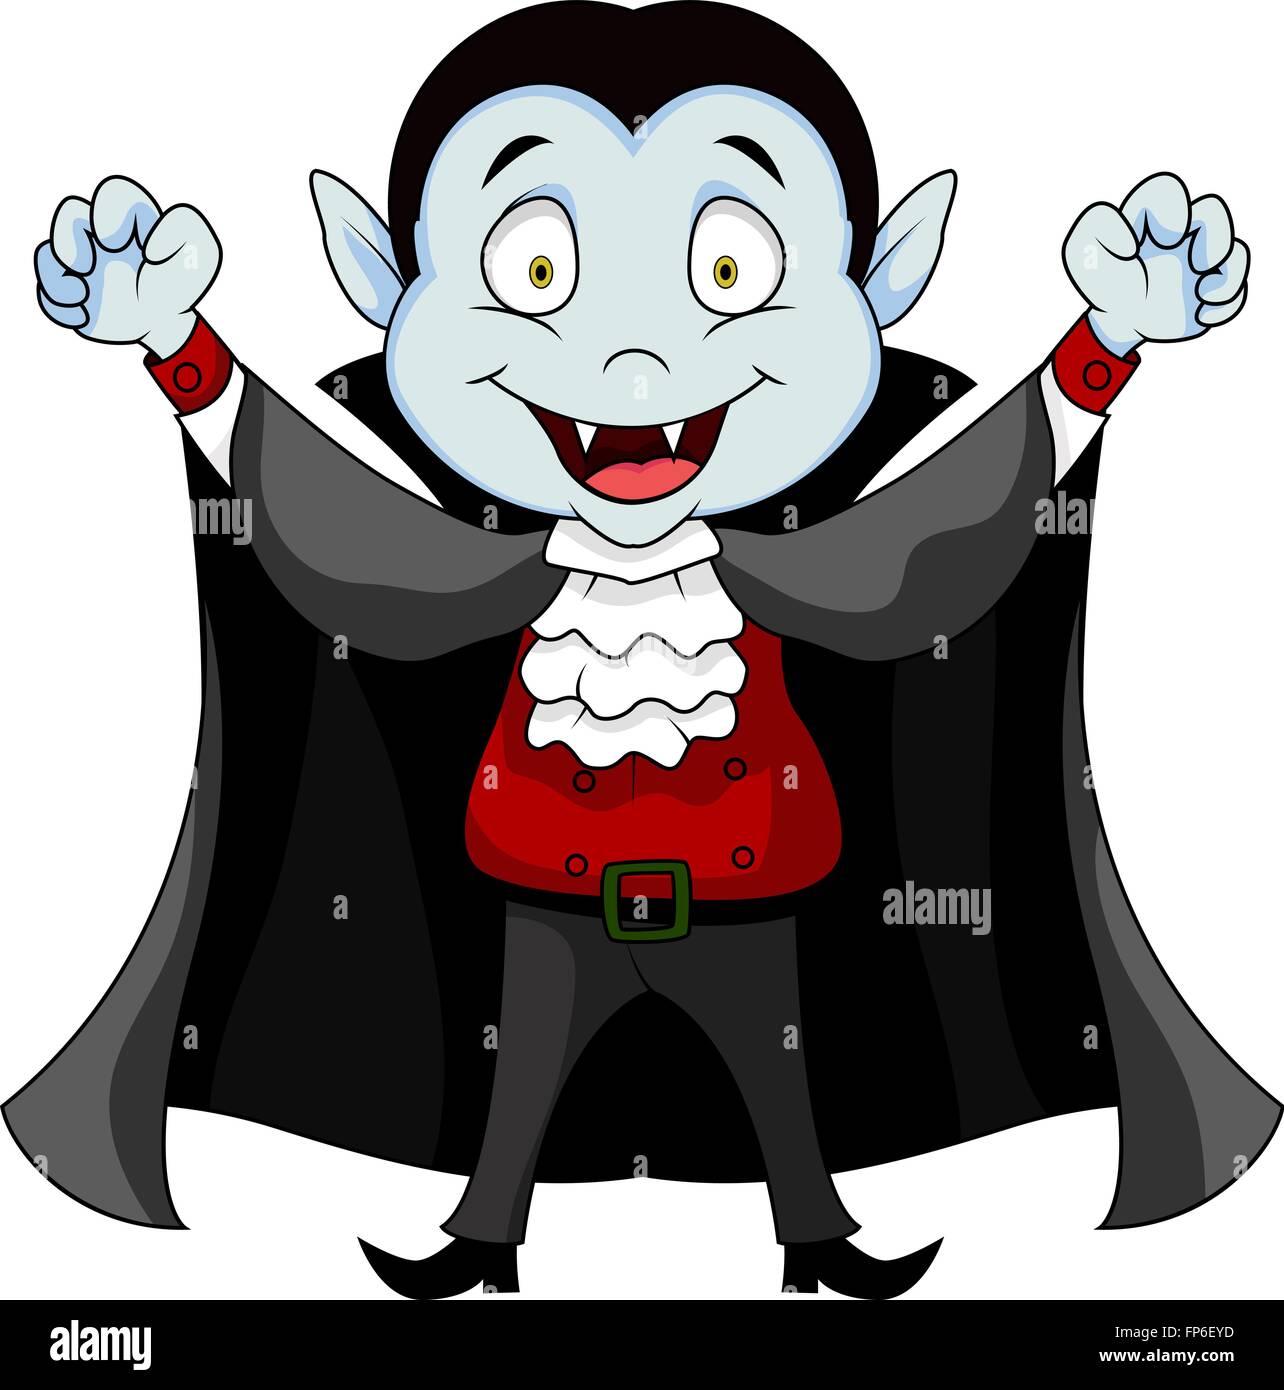 Vampire cartoon immagini e fotografie stock ad alta risoluzione - Alamy